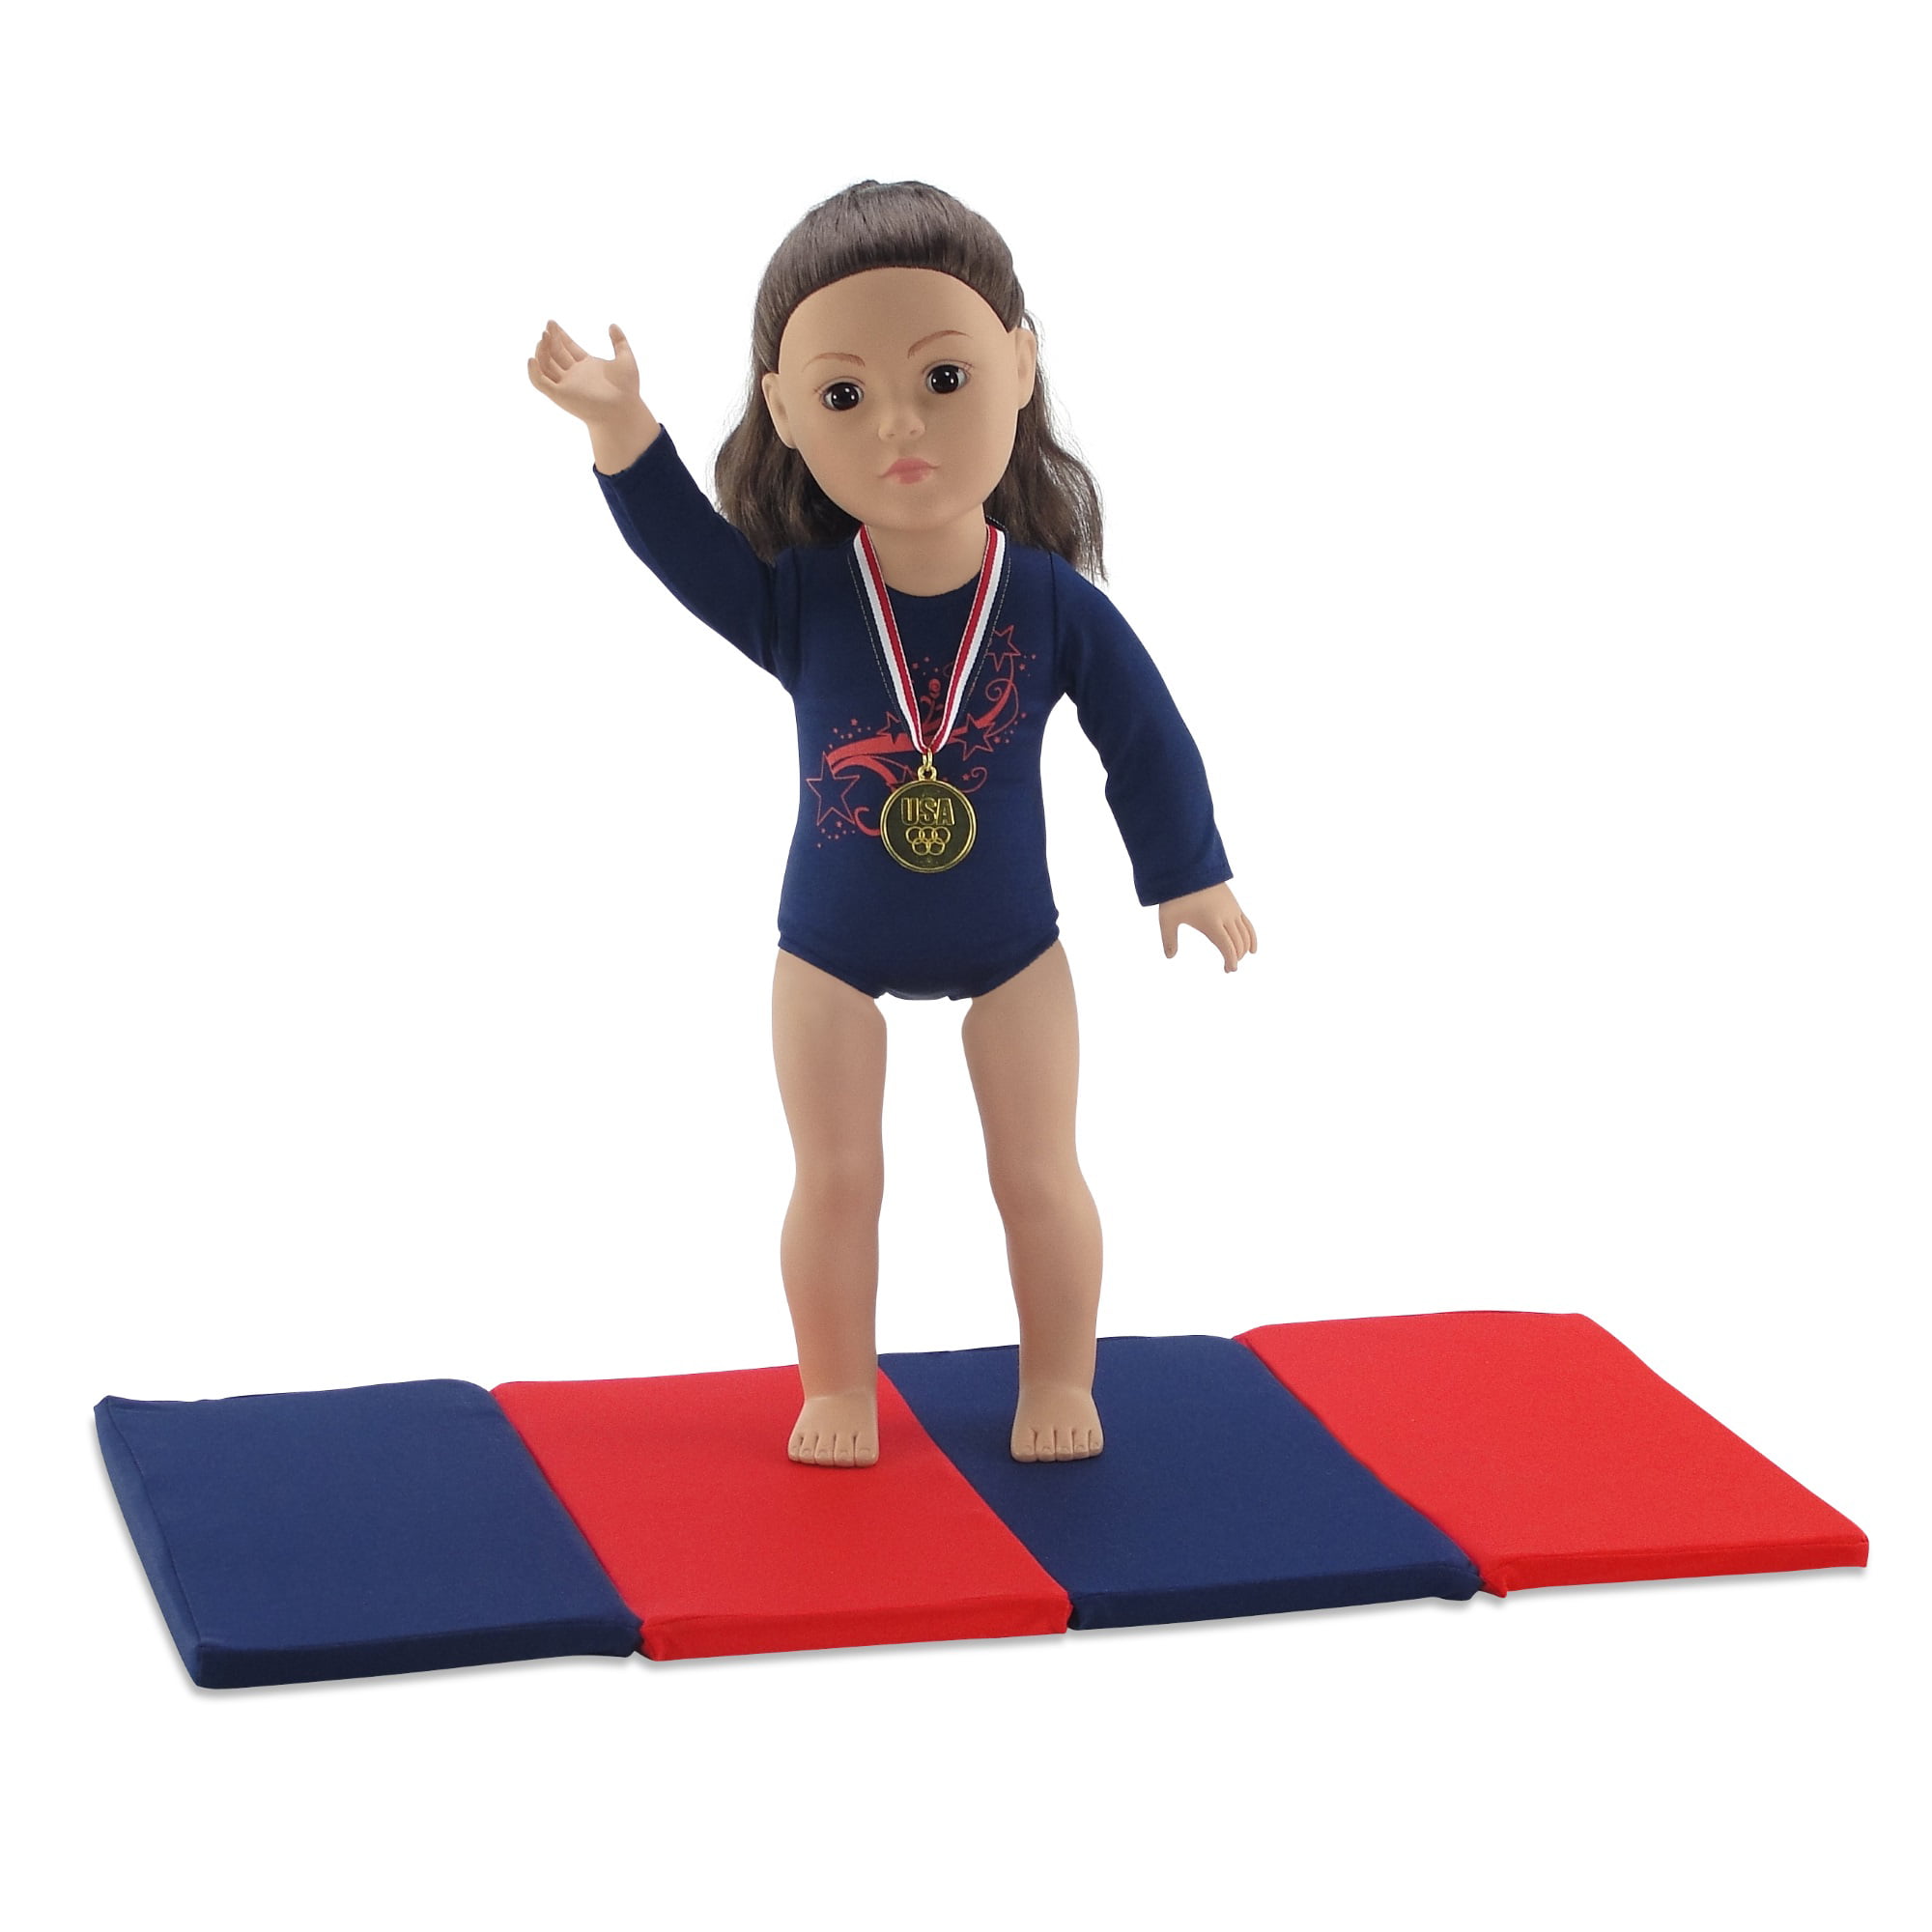 18 inch doll gymnastics set